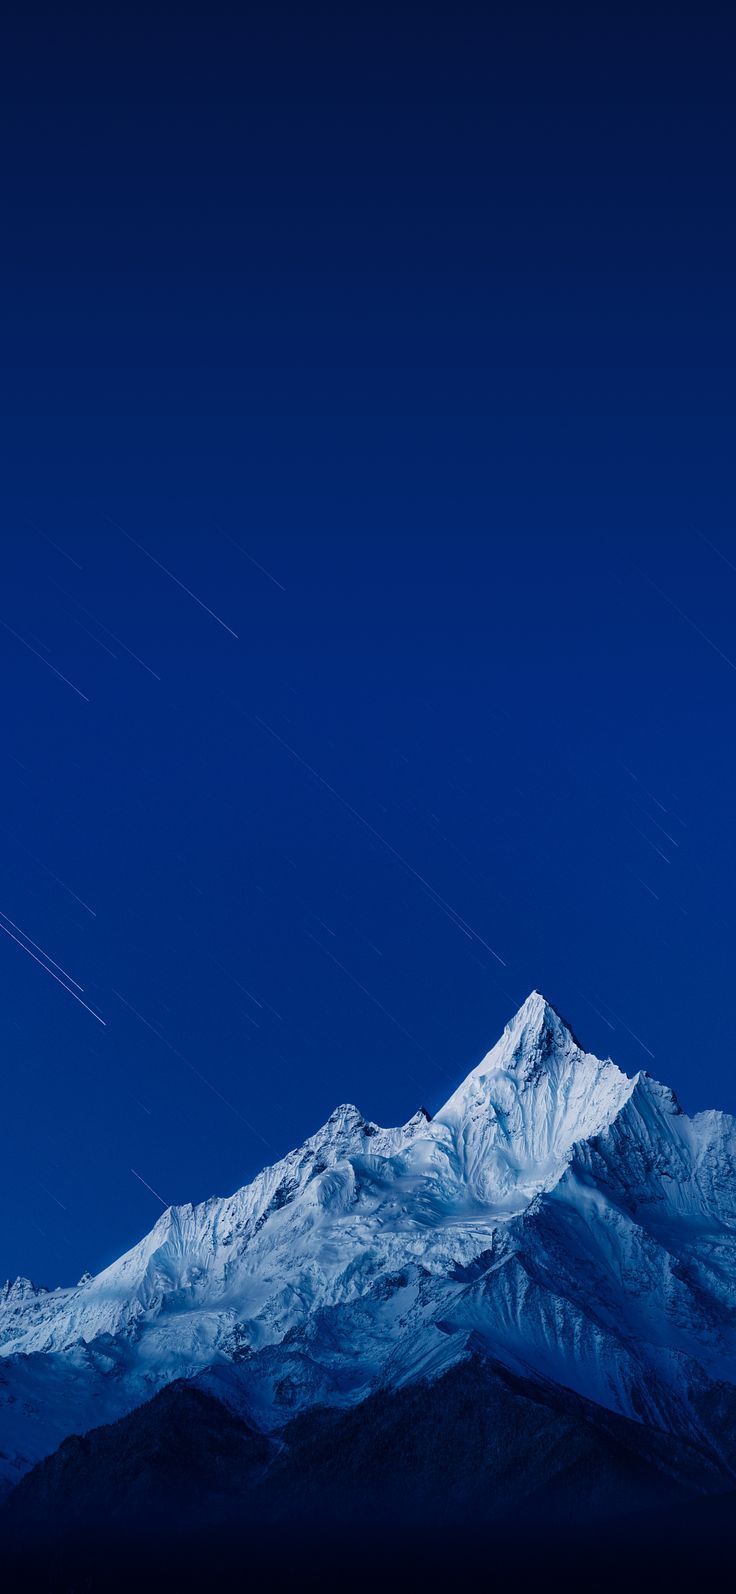 Sky blue and snow mountain wallpaper .com